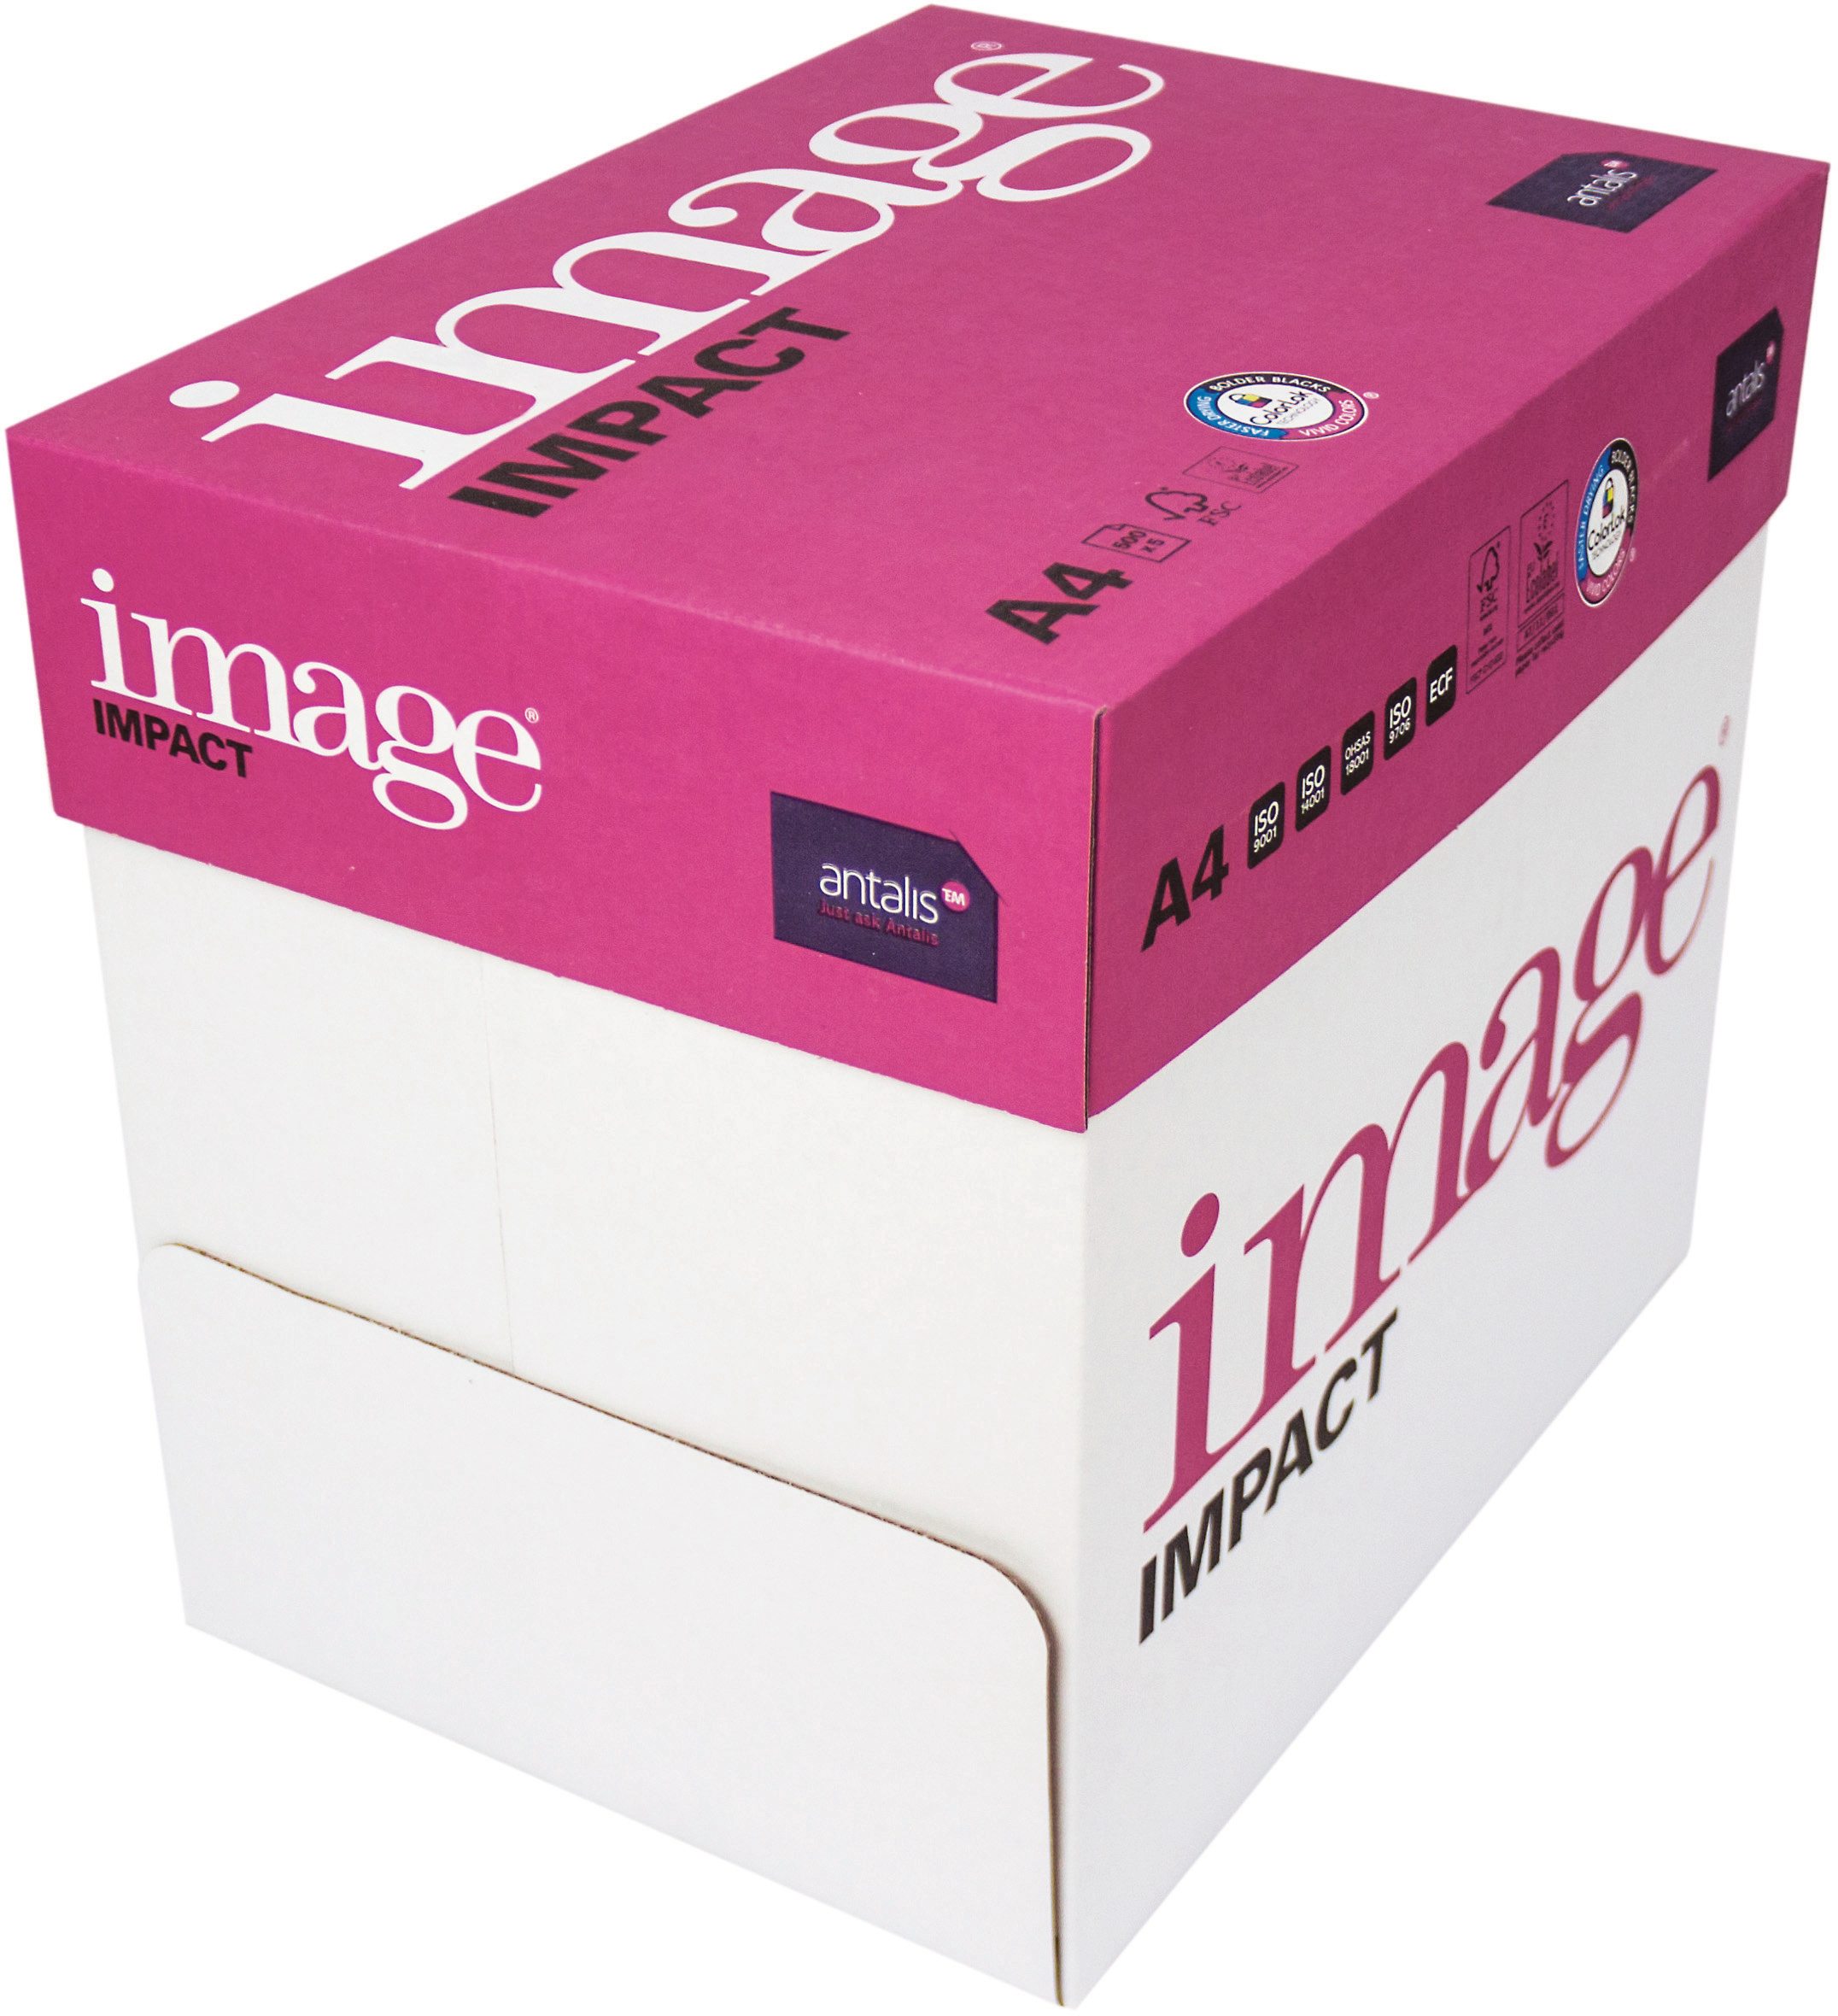 IMAGE IMPACT Papier à copier A4 420718 80g, blanc 2500 feuilles